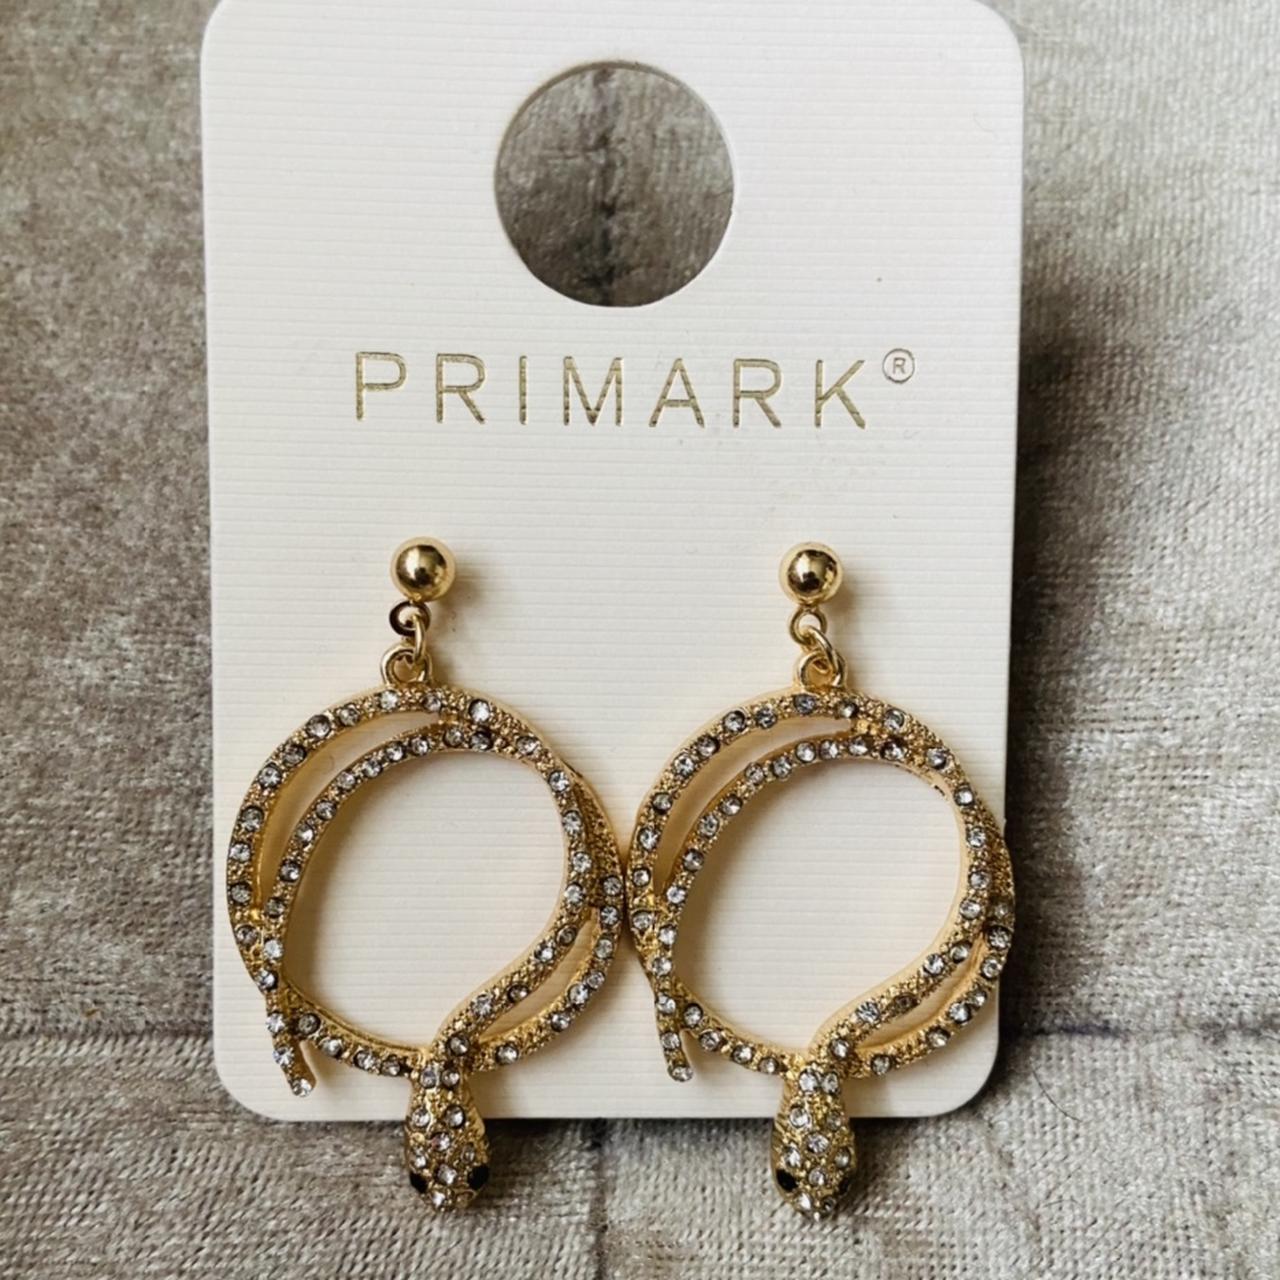 Primark Earrings Store  wwwillvacom 1693228631